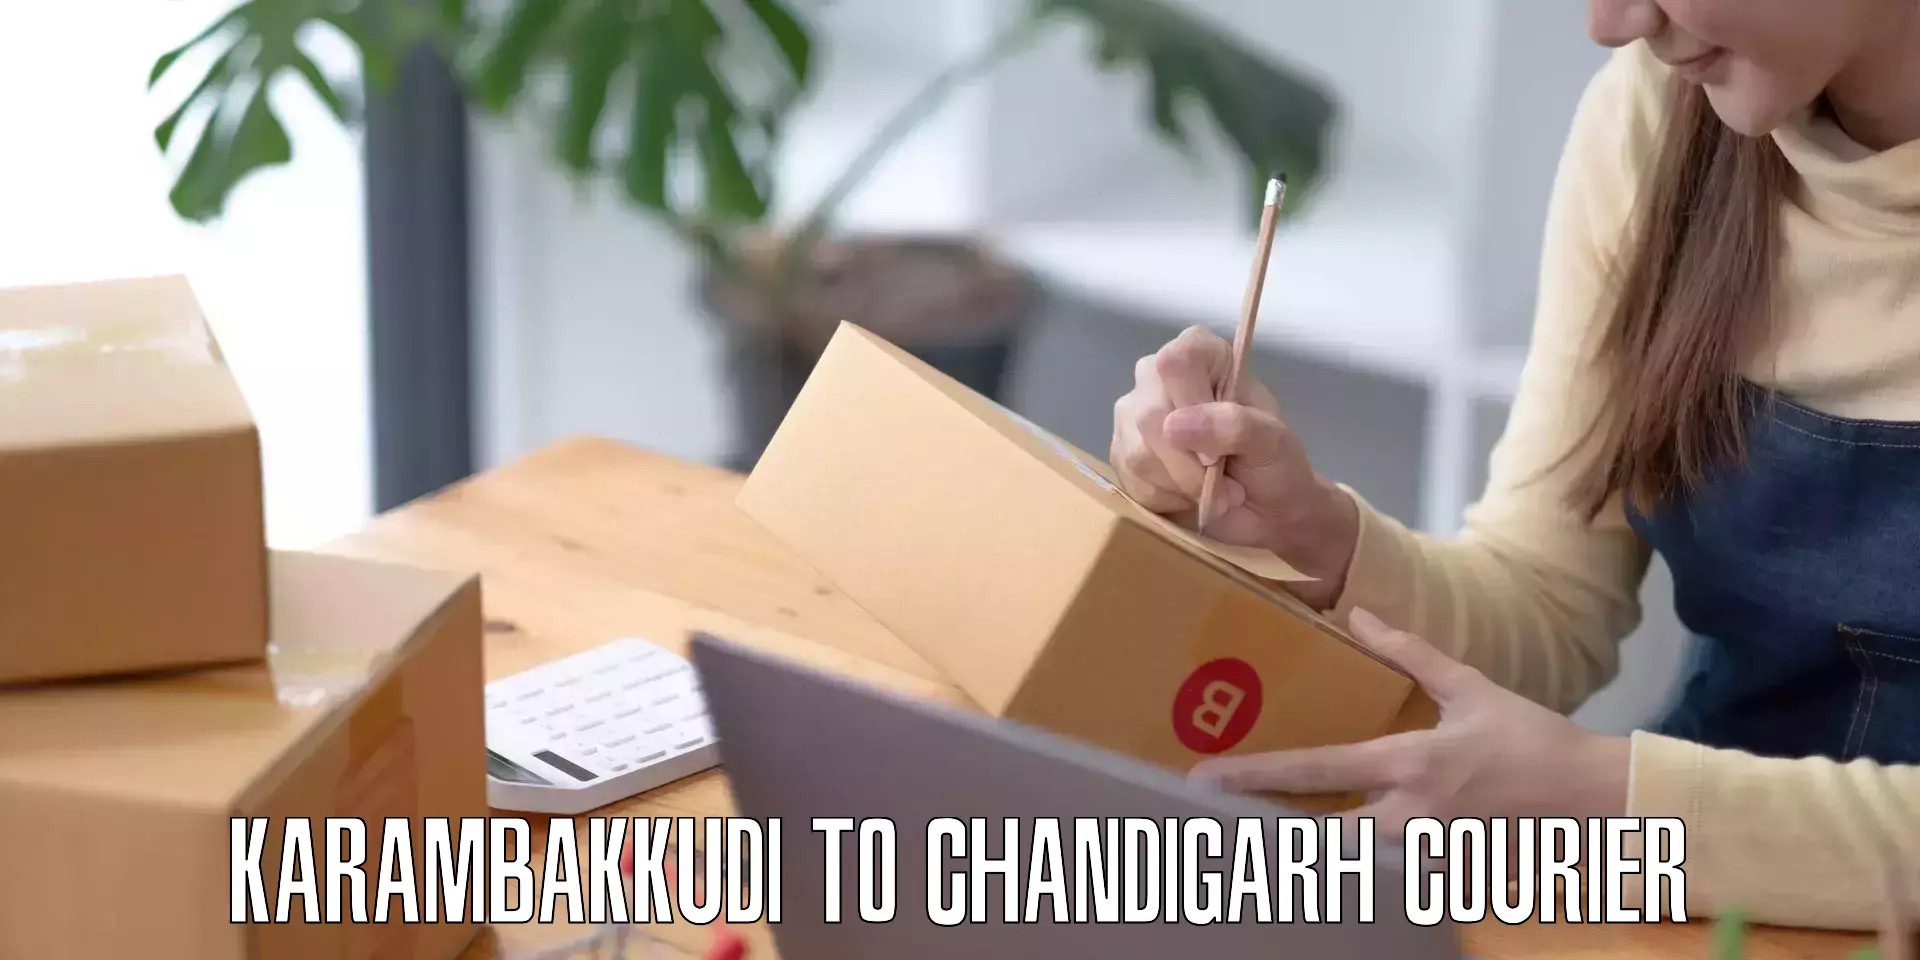 Baggage courier calculator Karambakkudi to Chandigarh